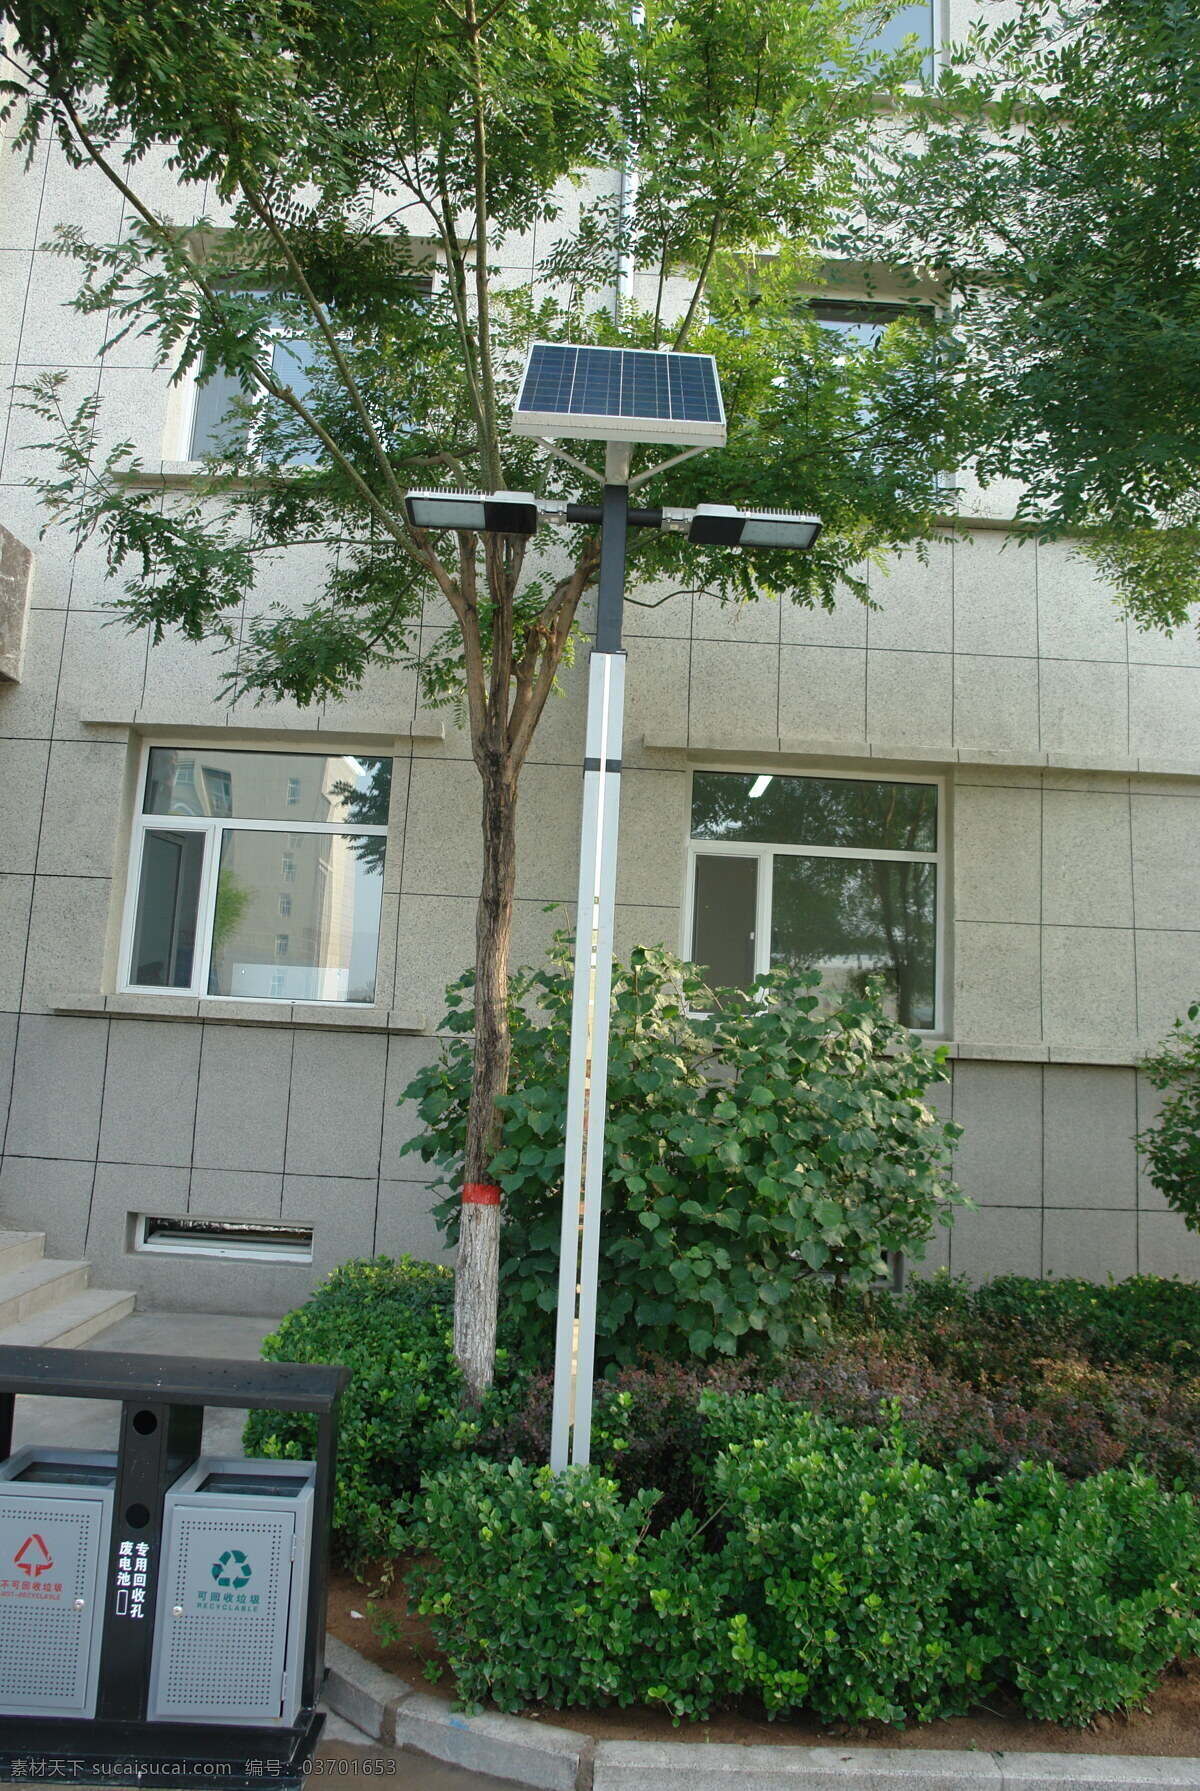 路灯 太阳路灯 庭院灯 小型灯 庭院景观灯 节能灯 再生 循环利用 太阳能路灯 节能产品 方案效果图 现代科技 科学研究